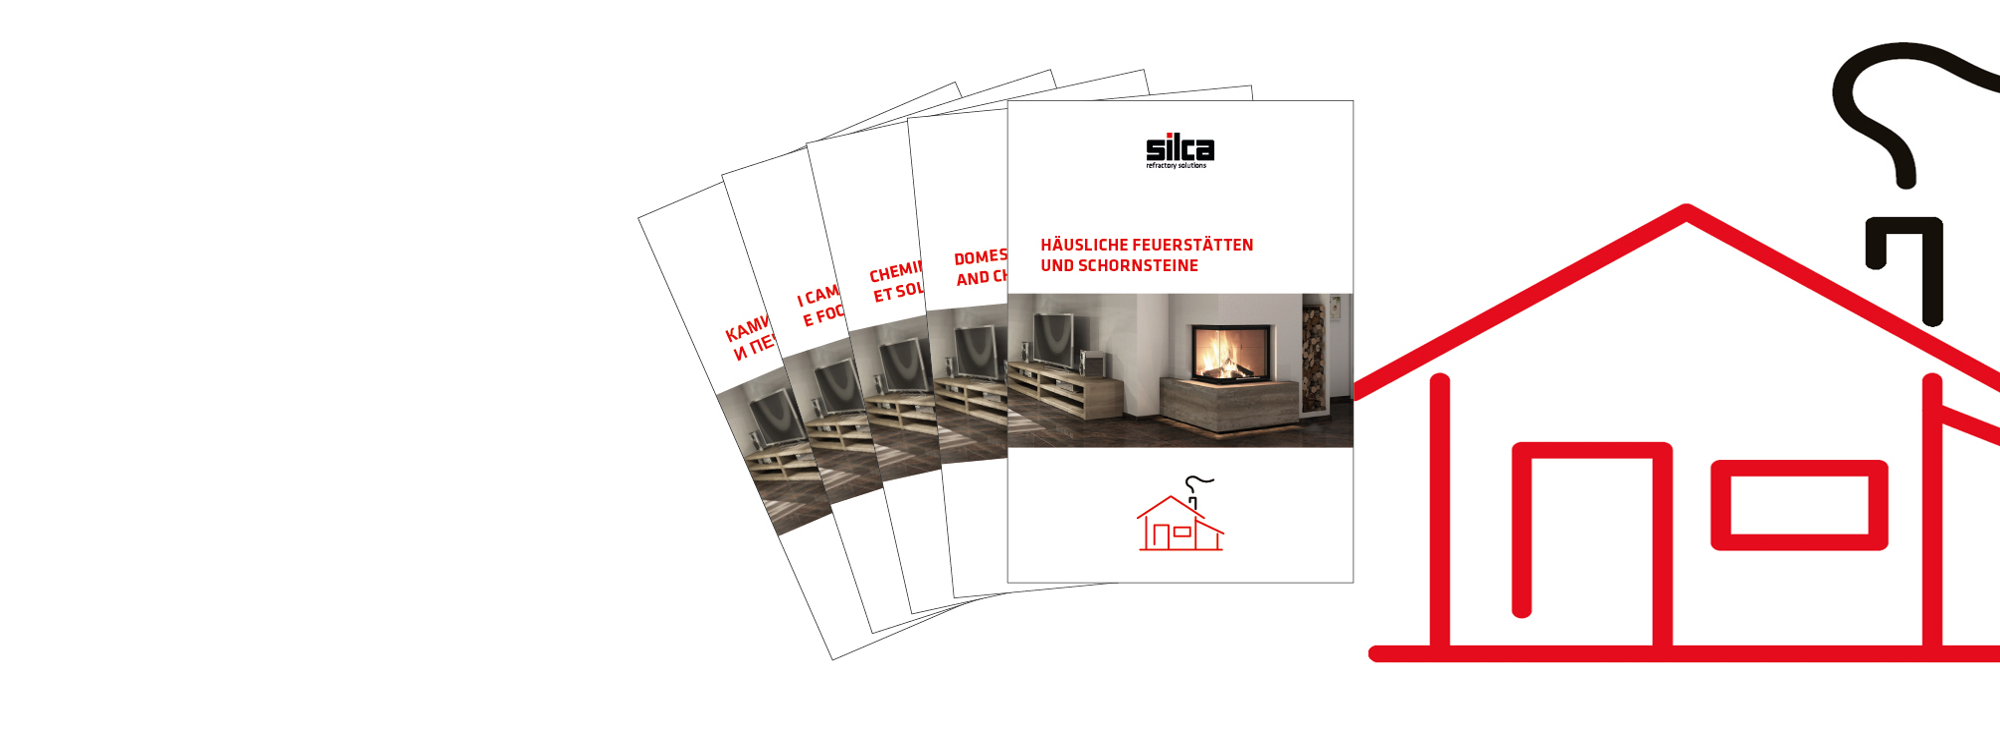 SILCA - Häusliche Feuerstätten und Schornsteine